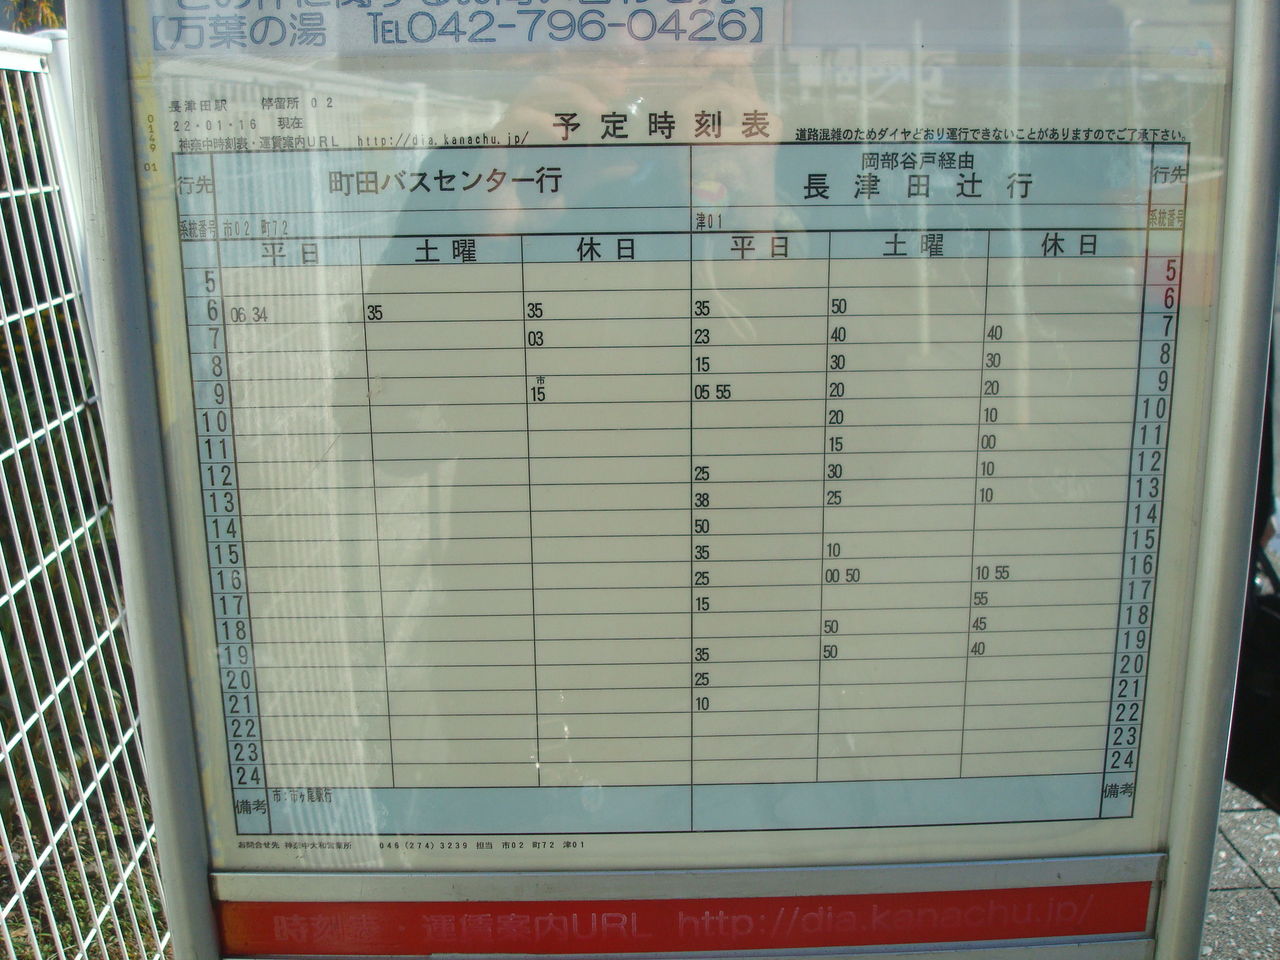 表 かなちゅう 時刻 神奈川中央交通バス「厚木バスセンター」のバス時刻表